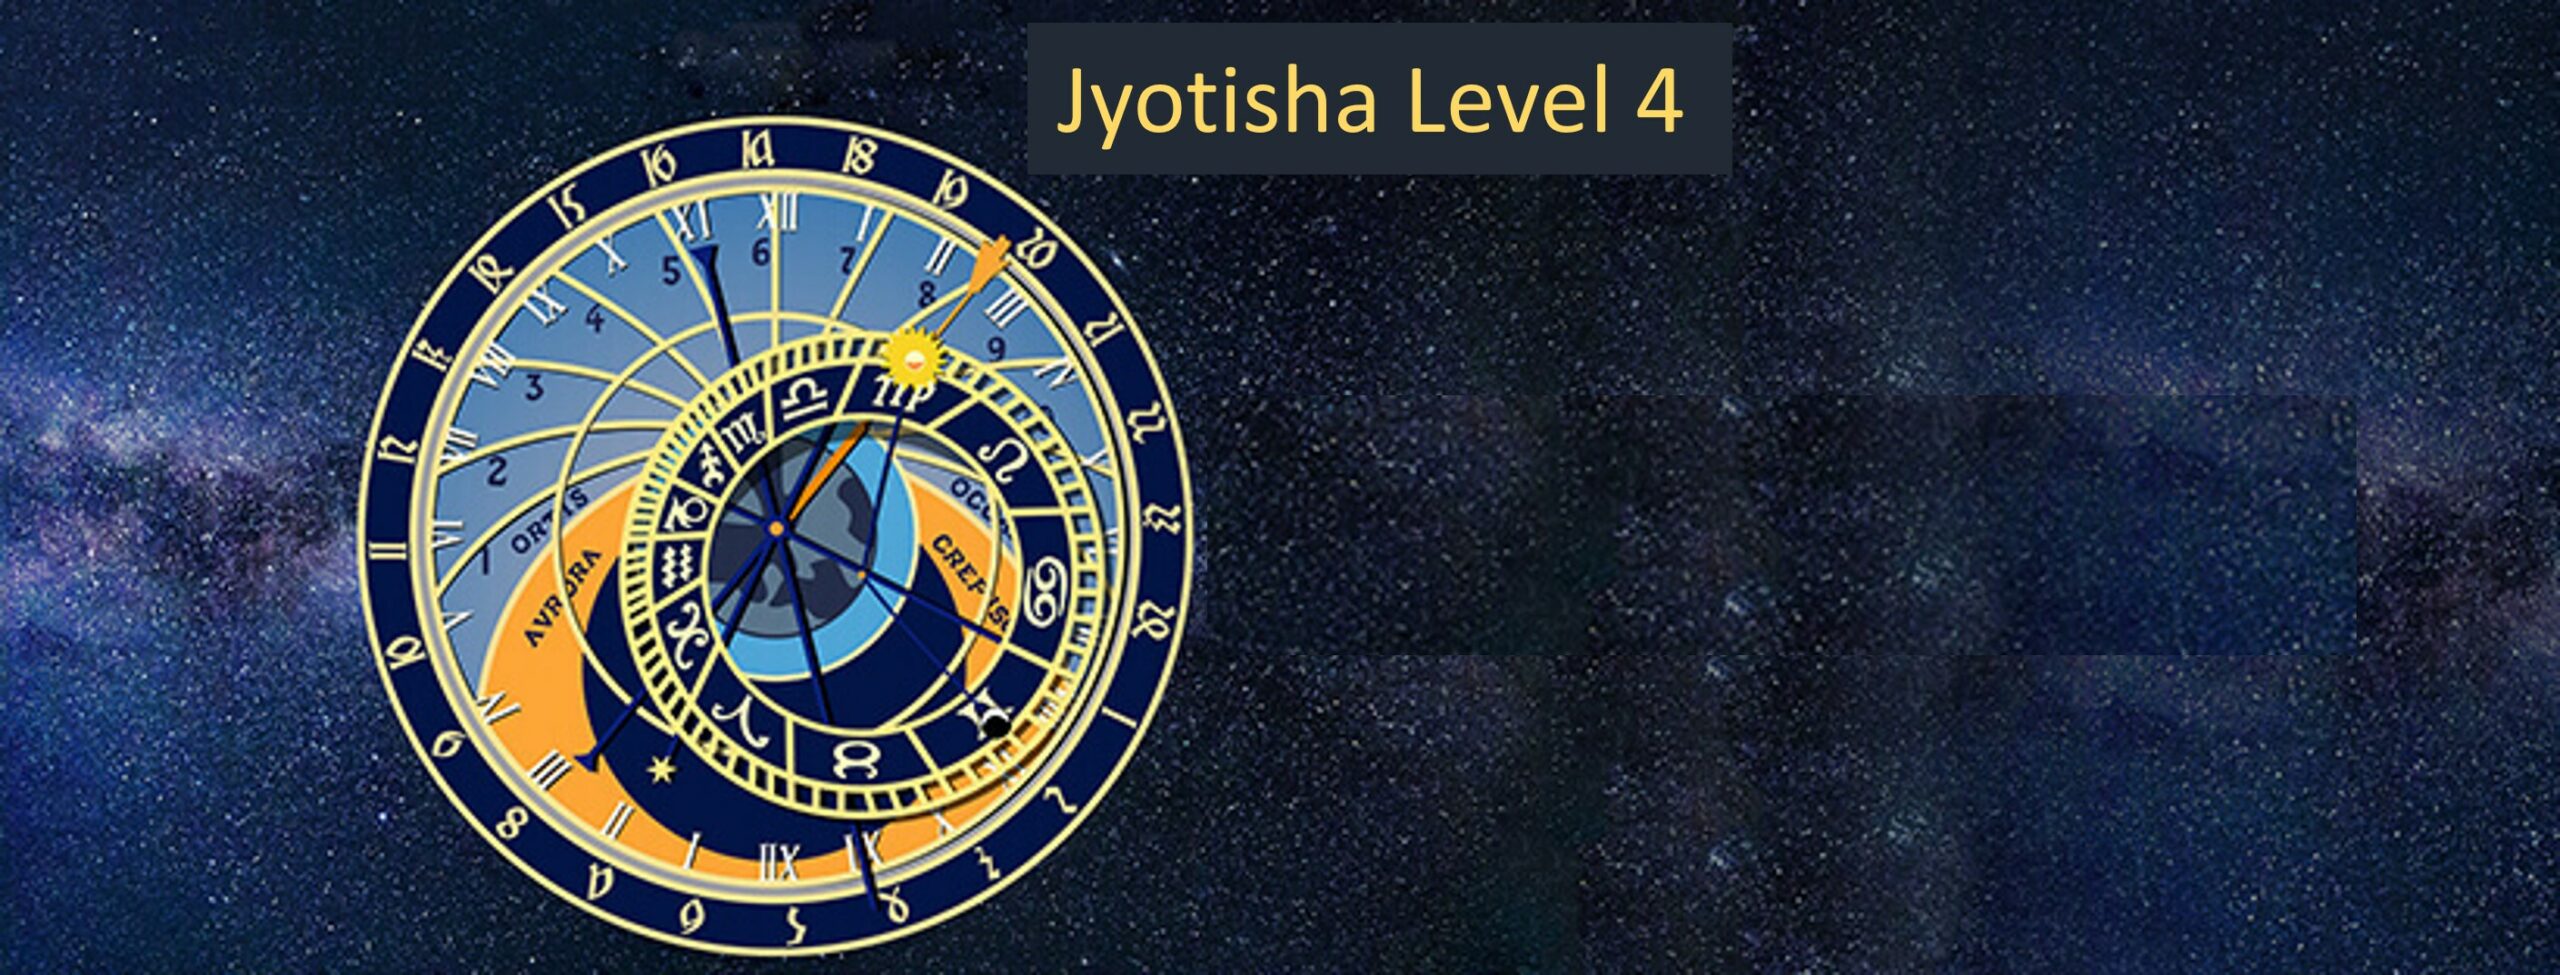 Online Live: Level 4 Jyotisha, Vimshottari Timing System